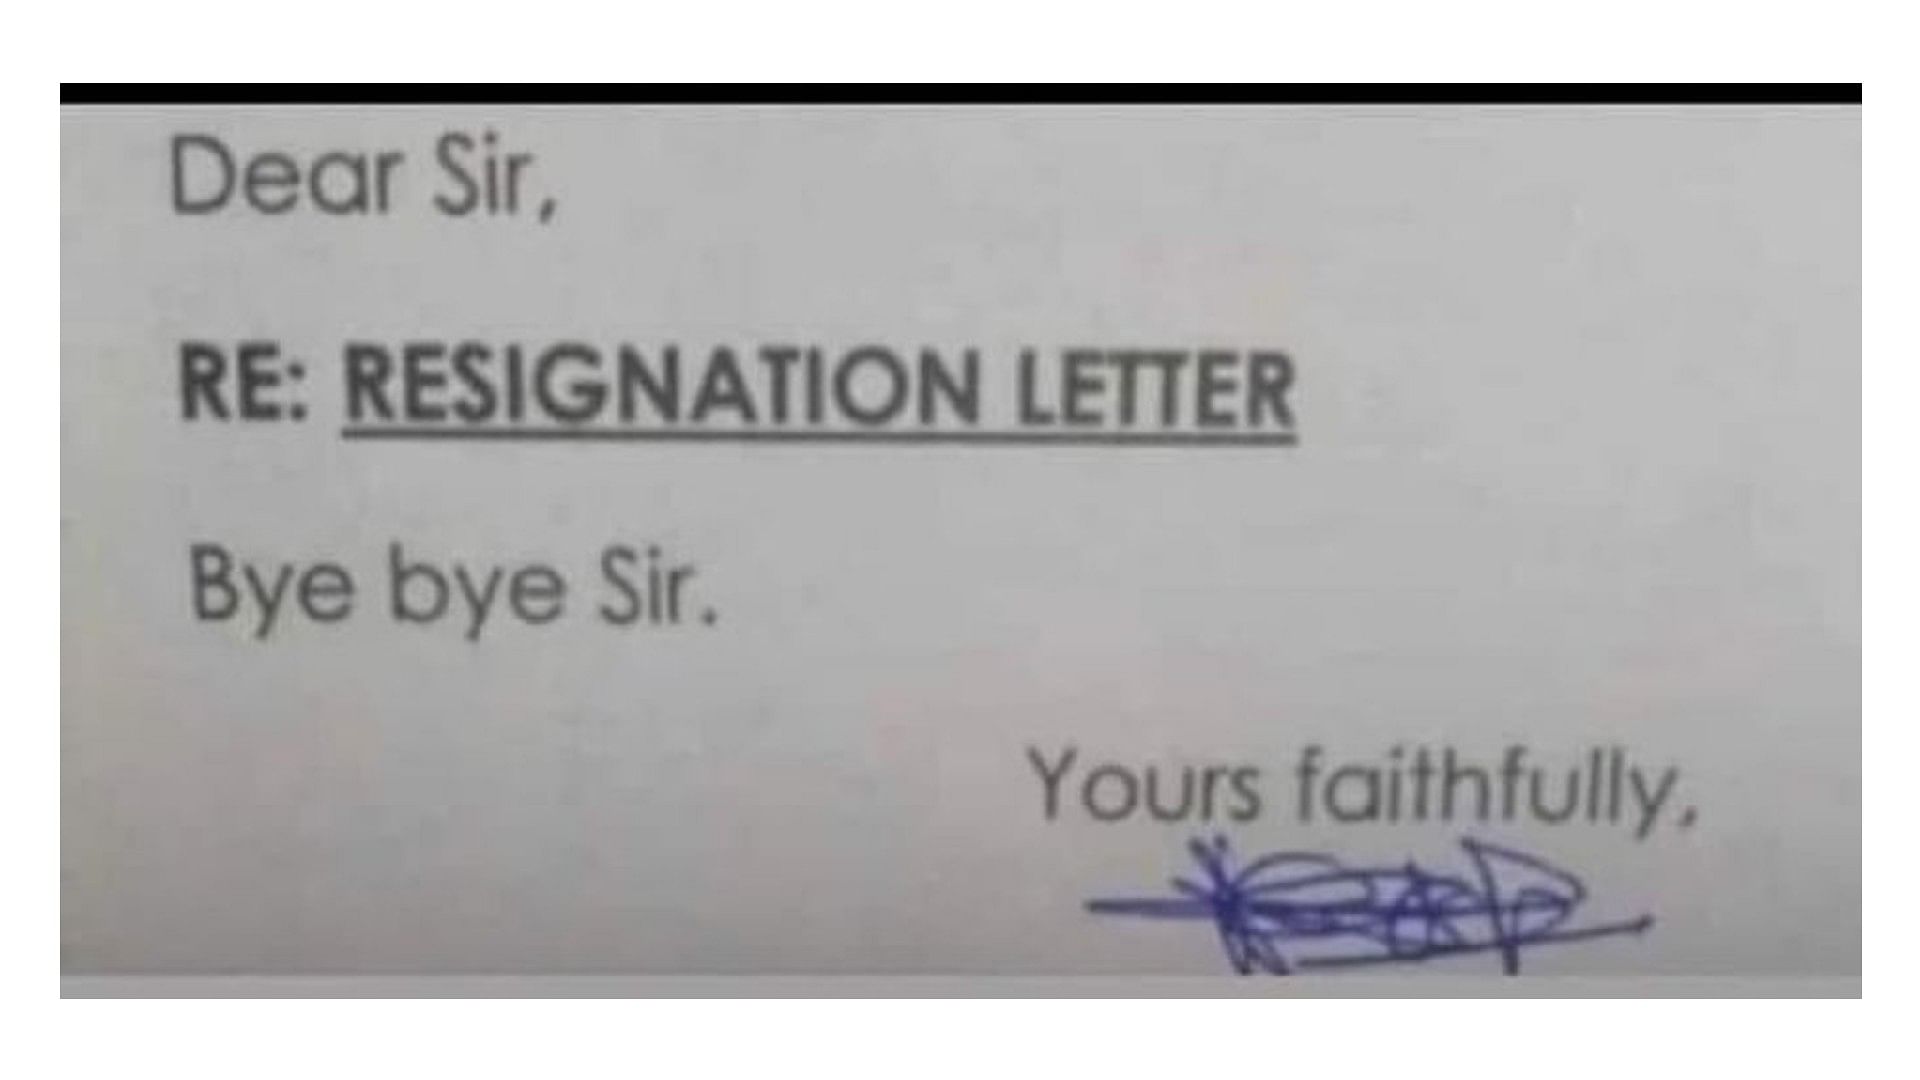 Unique Resignation Letter: employ Left the job by giving three word resignation letter Bye bye Sir.